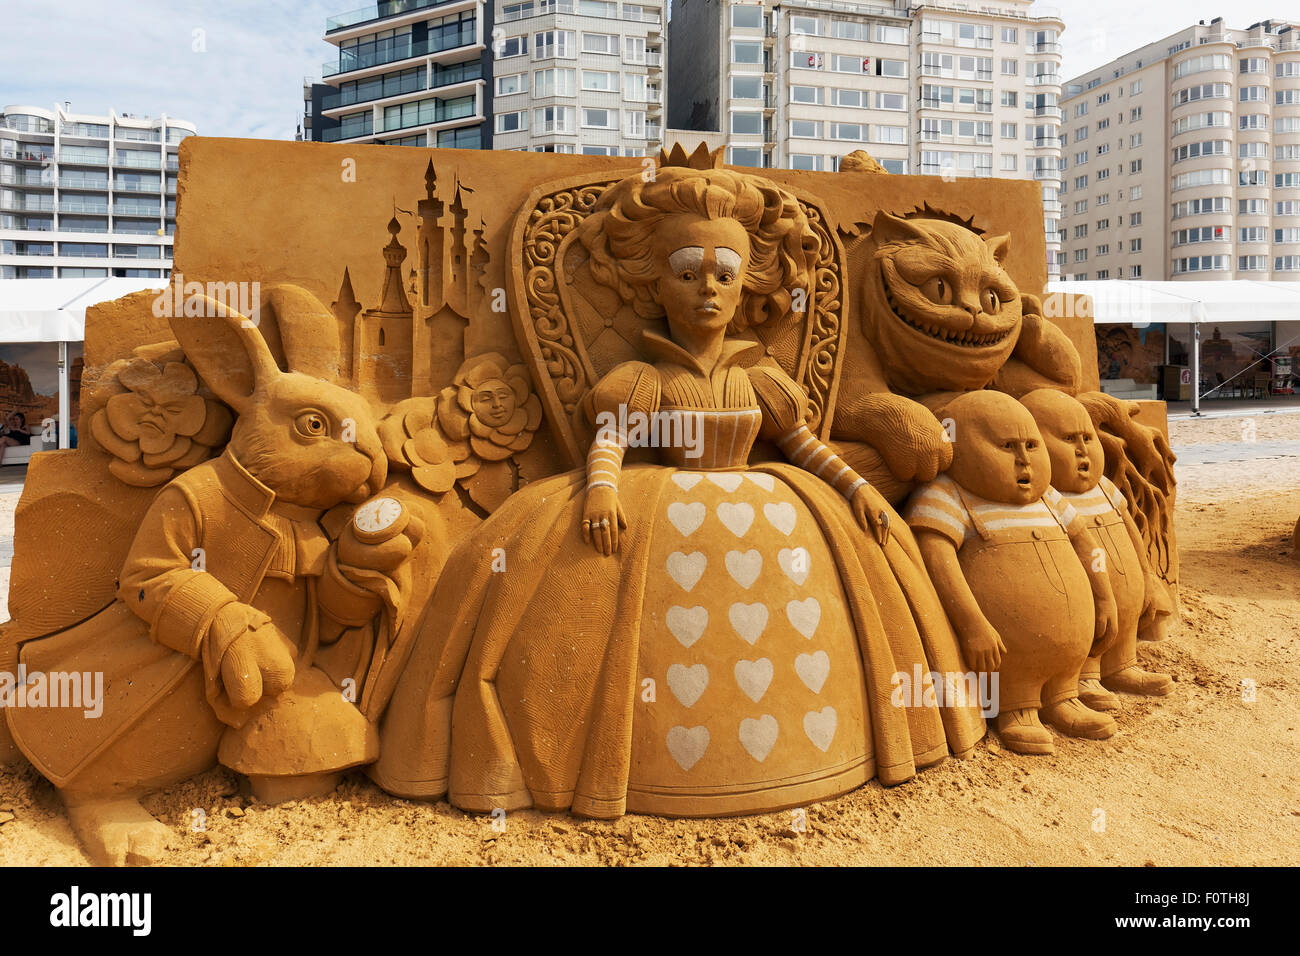 La Reine rouge d'Alice au Pays des merveilles, de sculptures de sable, sculptures de sable gelé Festival Soleil d'été, Oostende, Flandre occidentale, Belgique Banque D'Images